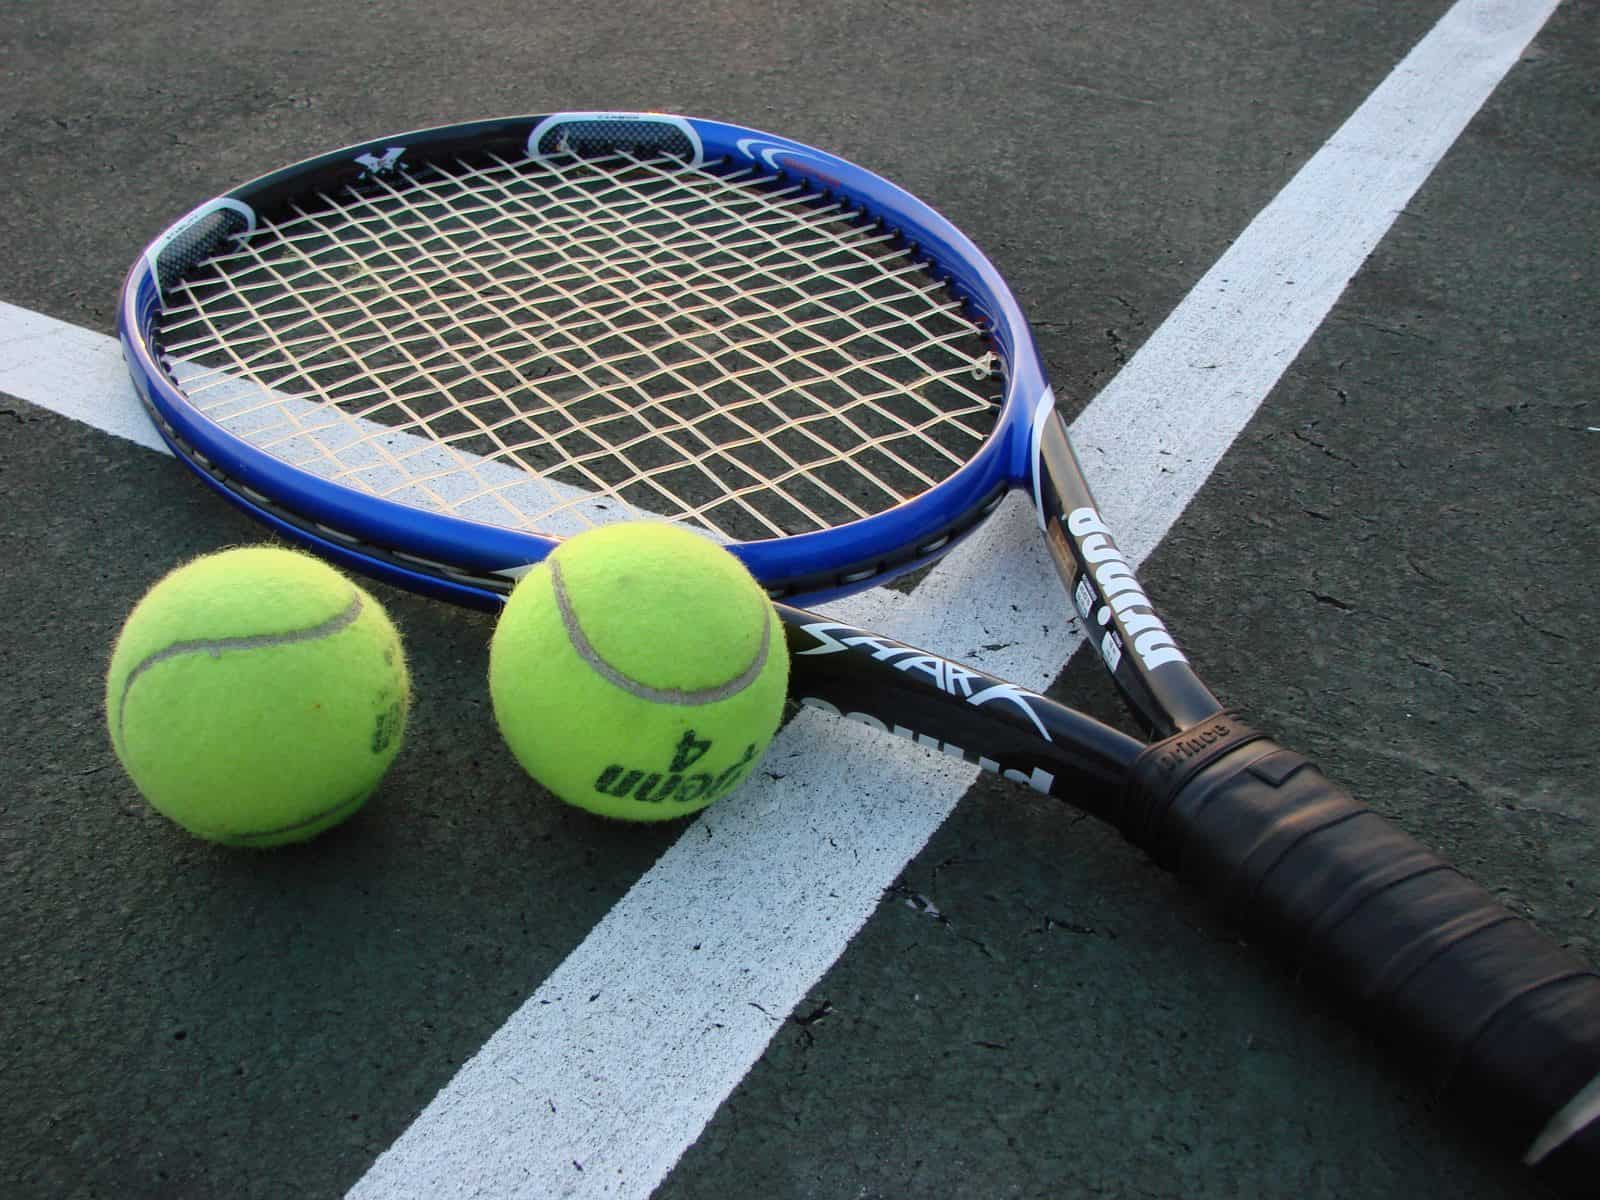 Raquete e bolas de ténis